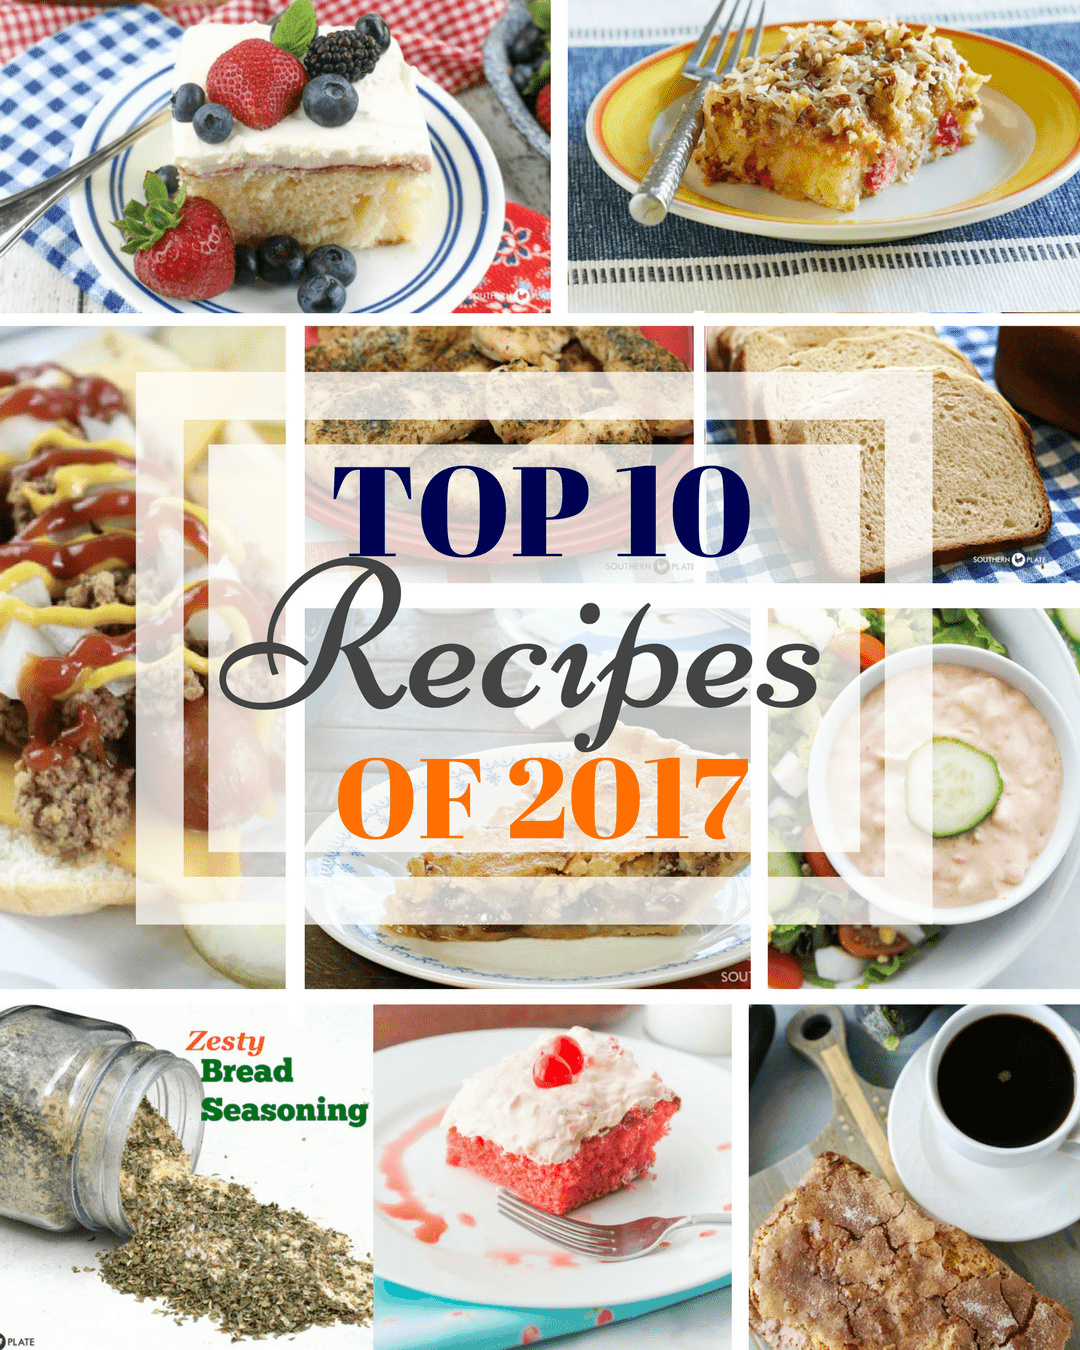 Top 10 Recipes of 2023